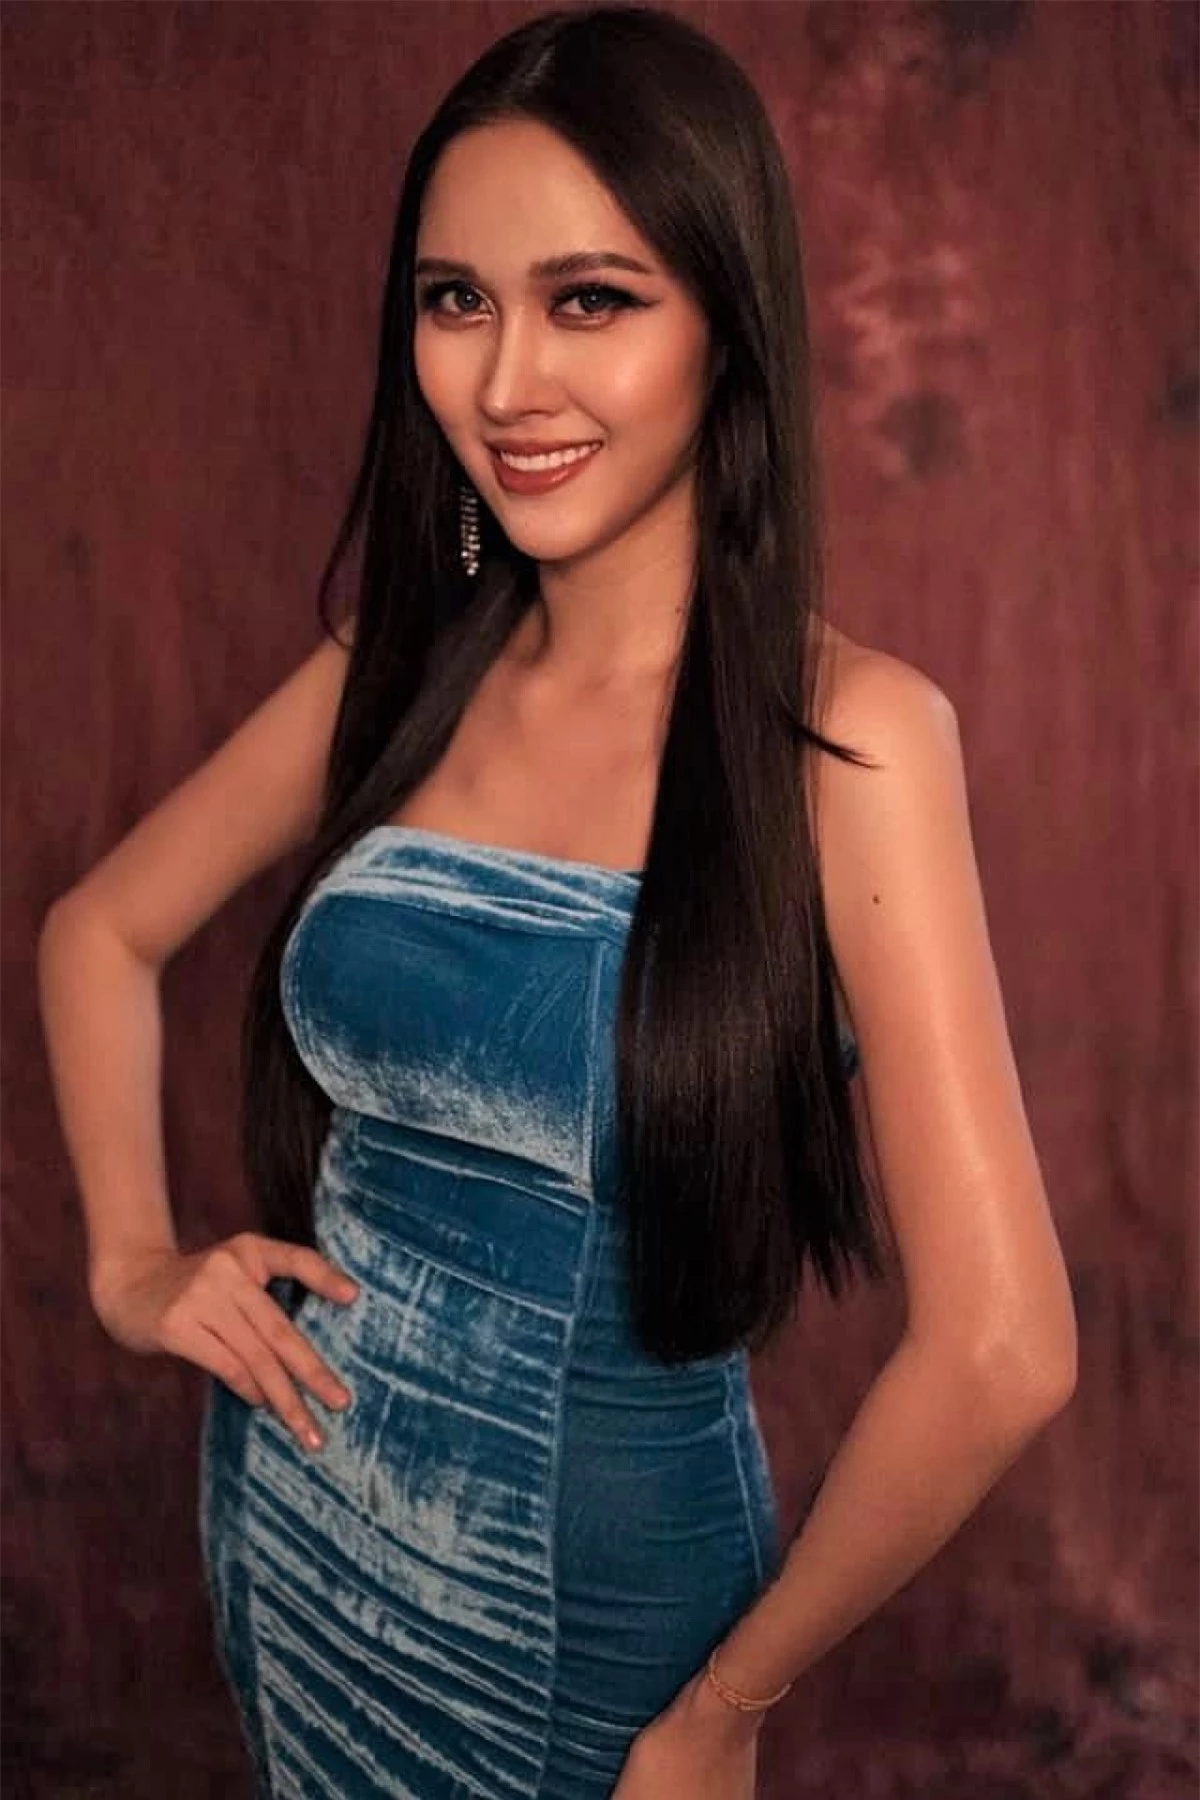 Như vậy, Sai Fhon sẽ đại diện quốc giaCampuchia dự thi Miss International Queen tại Thái Lan.